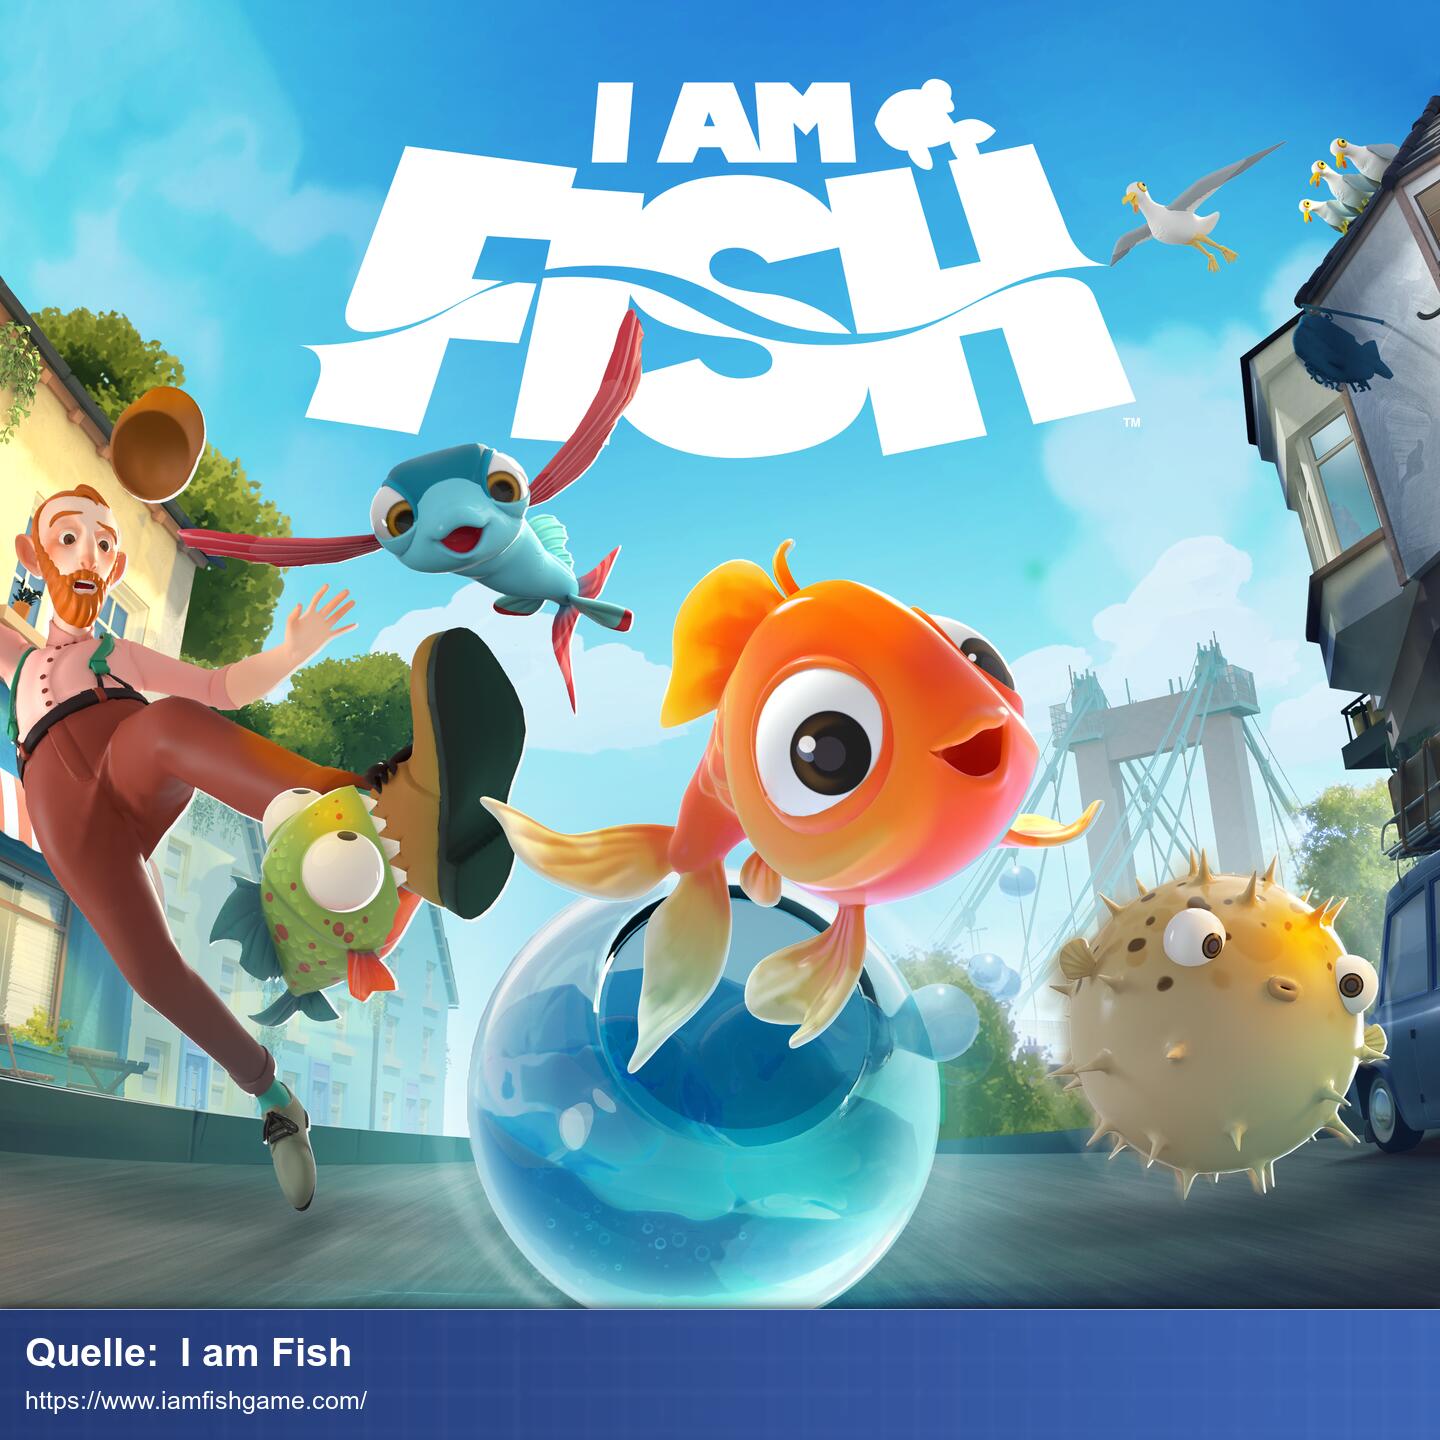 Marketingbild für 'I am Fish'. Ein niedlicher Fisch springt aus einem runden Fischglas auf die Kamera zu. Im Mittelgrund sieht man einen Kugelfisch, einen fliegenden Fisch und einen Mann, der gerade von einem Pyranha gebissen wird. Im Hintergrund sieht man eine Straße, Hauser und eine große Bruecke. 